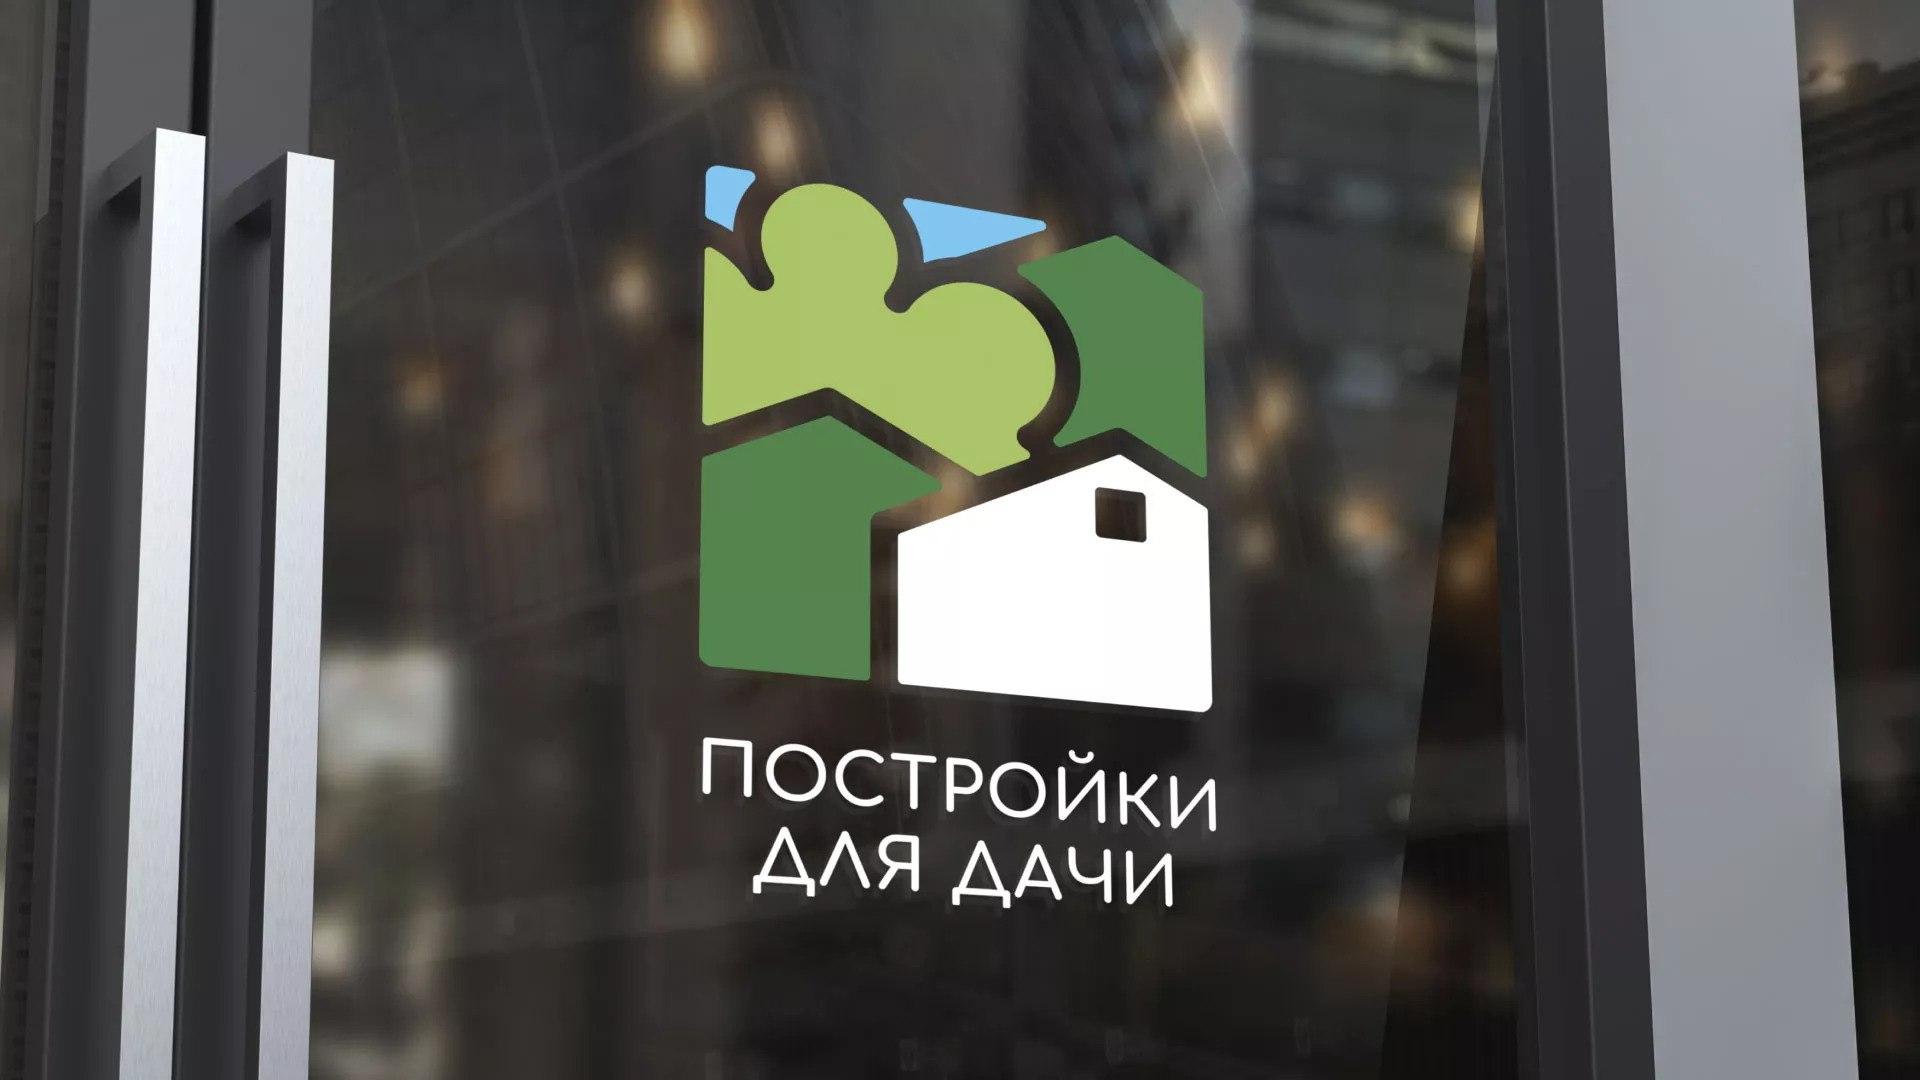 Разработка логотипа в Приозерске для компании «Постройки для дачи»